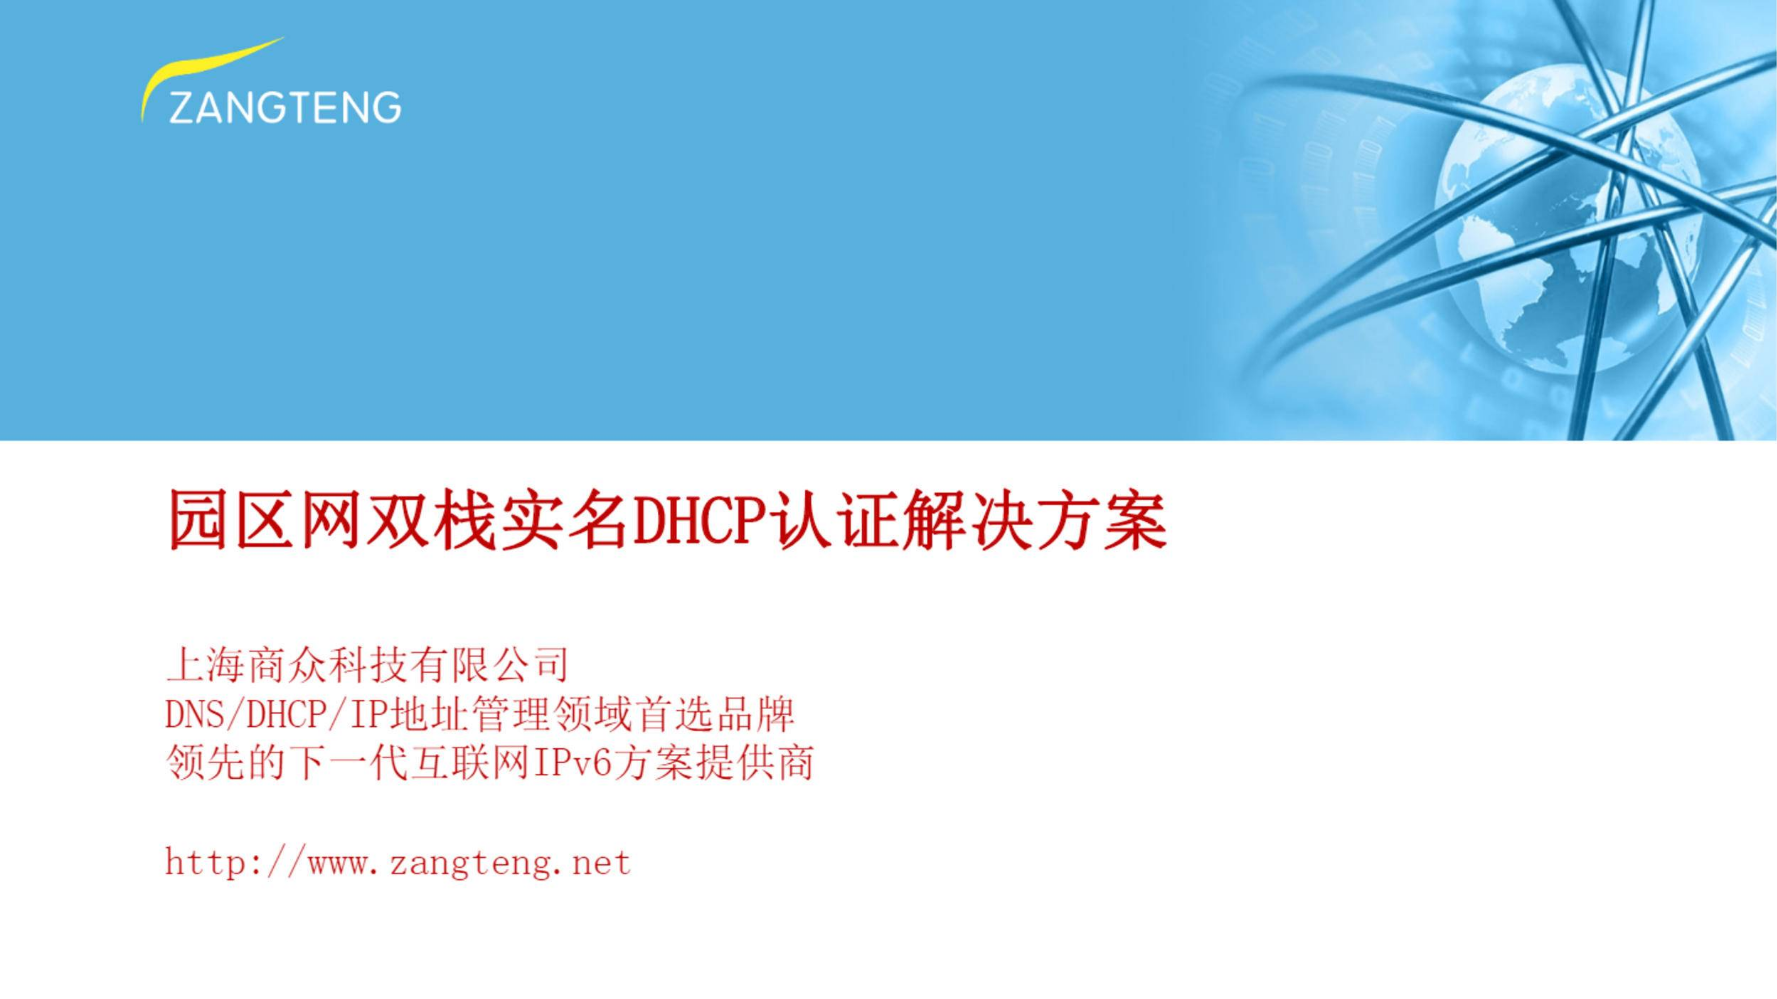 园区网双栈DHCP认证方案